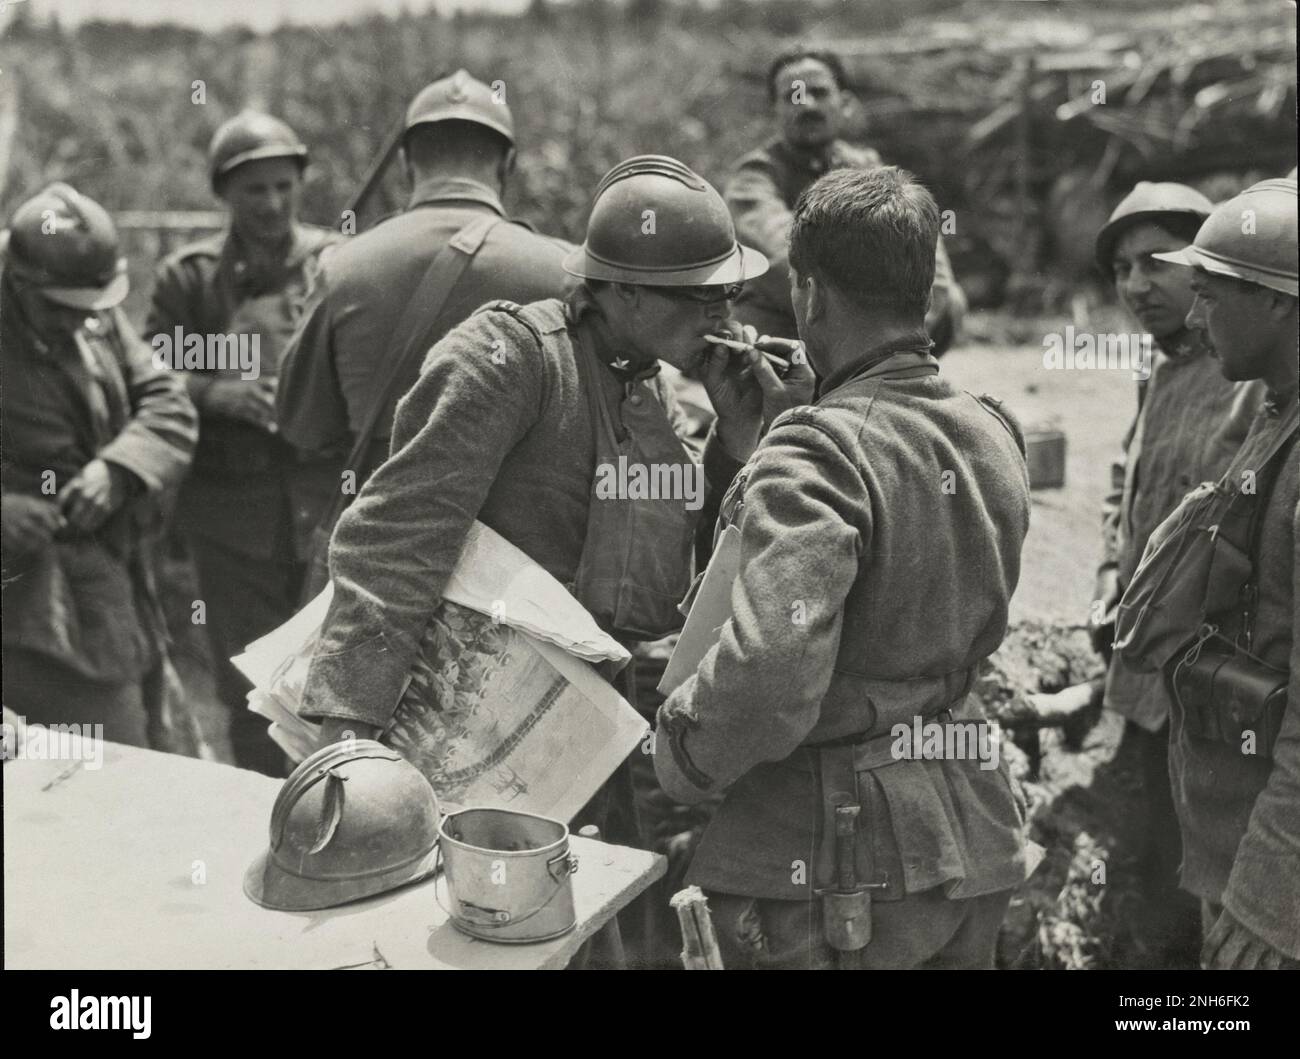 Première Guerre mondiale Un soldat italien tenant un journal illustré reçoit sa cigarette allumée par un autre soldat près de la rivière Piave, en Italie. Octobre 1918 Banque D'Images